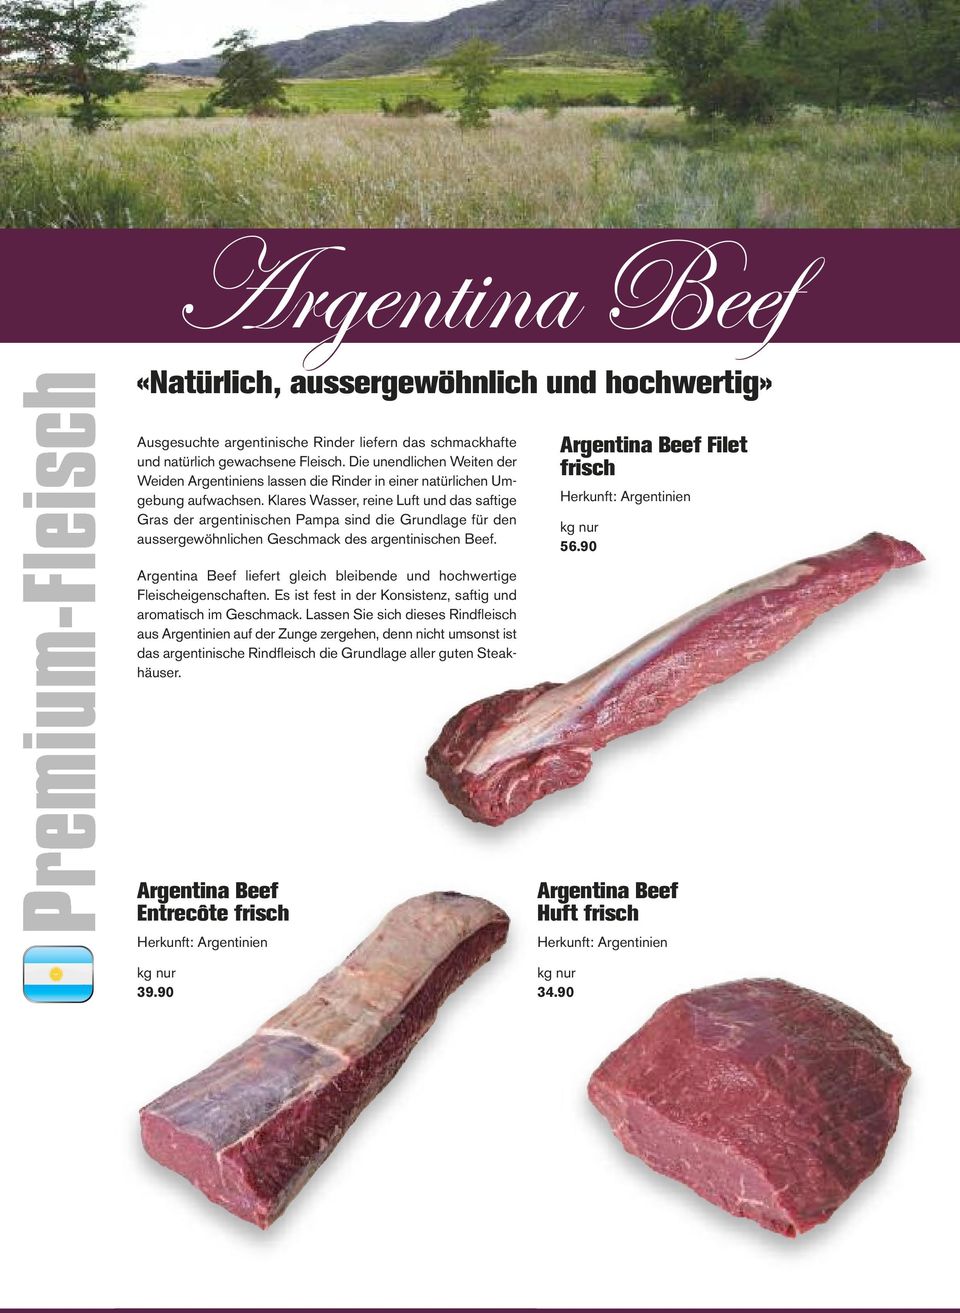 Klares Wasser, reine Luft und das saftige Gras der argentinischen Pampa sind die Grundlage für den aussergewöhnlichen Geschmack des argentinischen Beef. Argentina Beef Filet Herkunft: Argentinien 56.